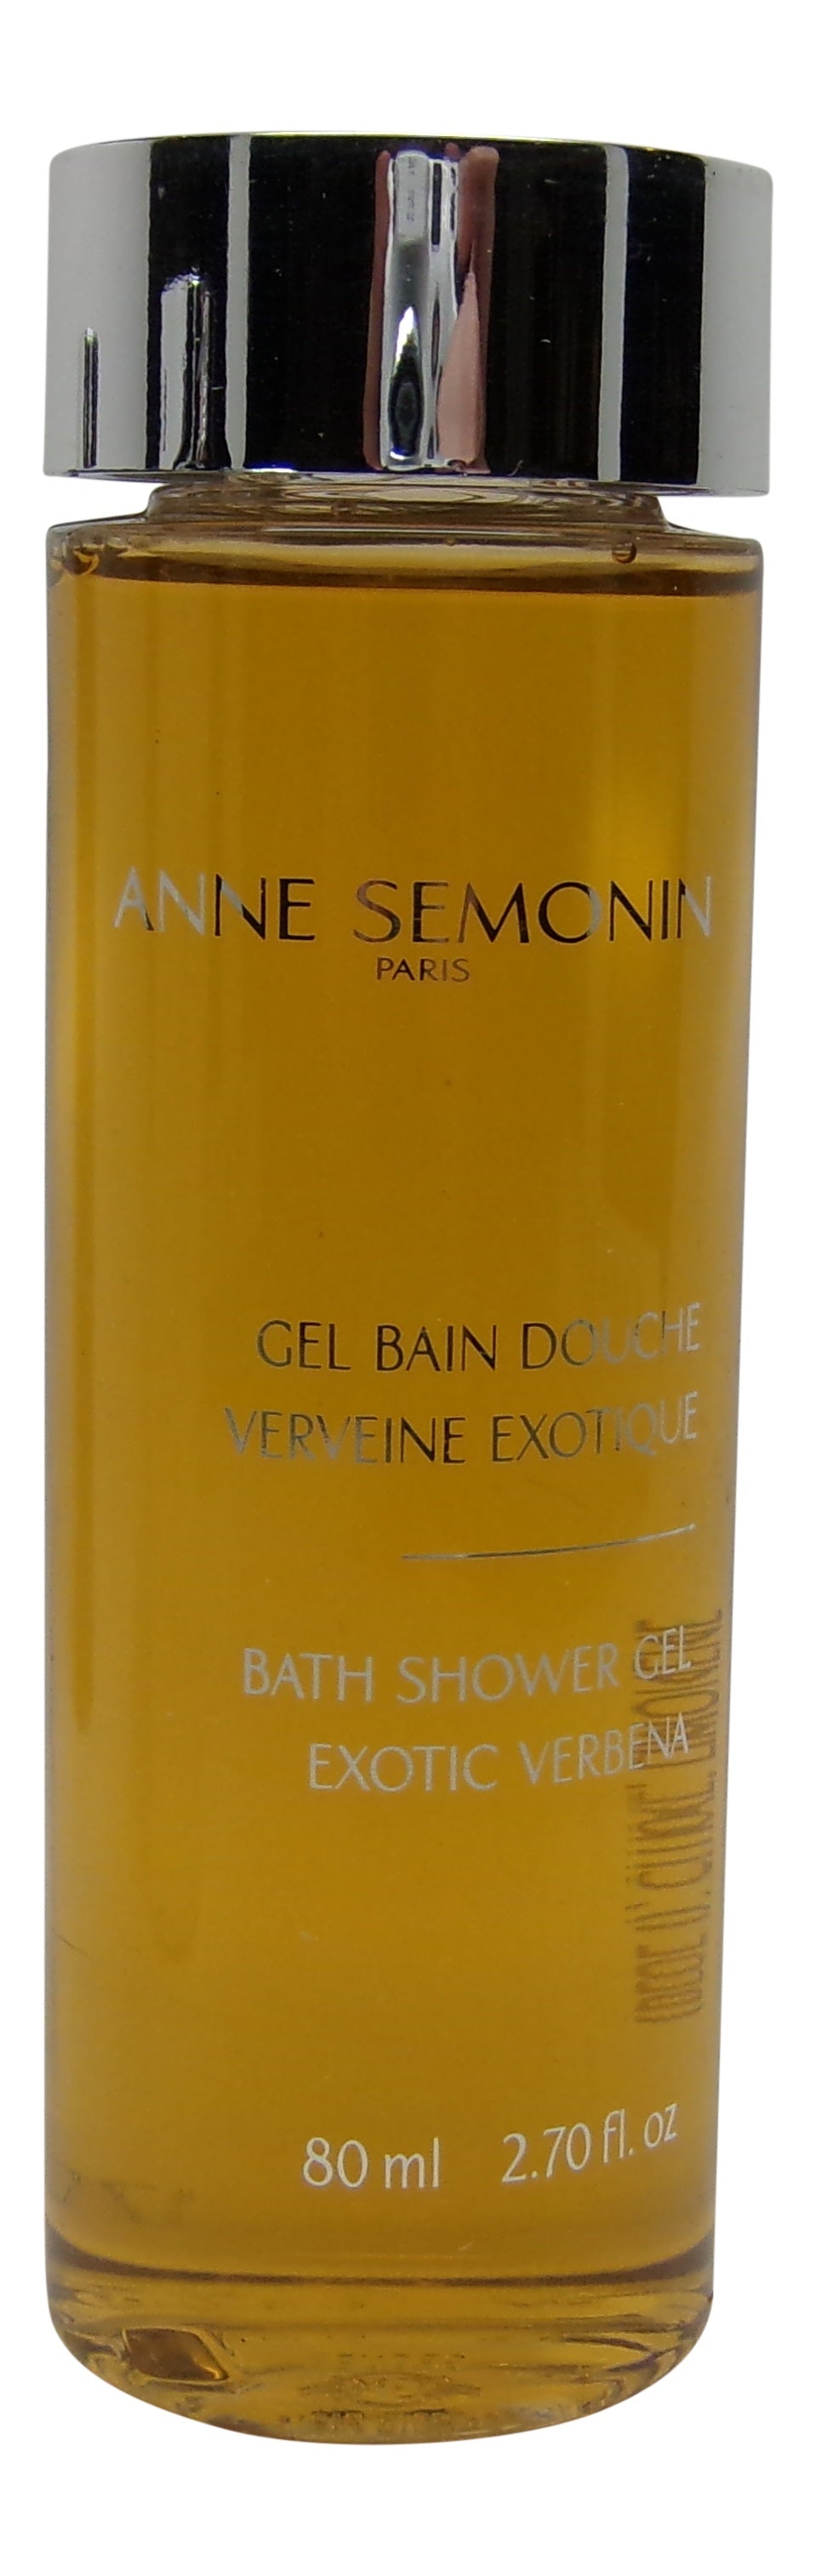 Anne Semonin Bath & Shower Gel lot of 4 each 2.7oz Bottles.Total of 10.8oz